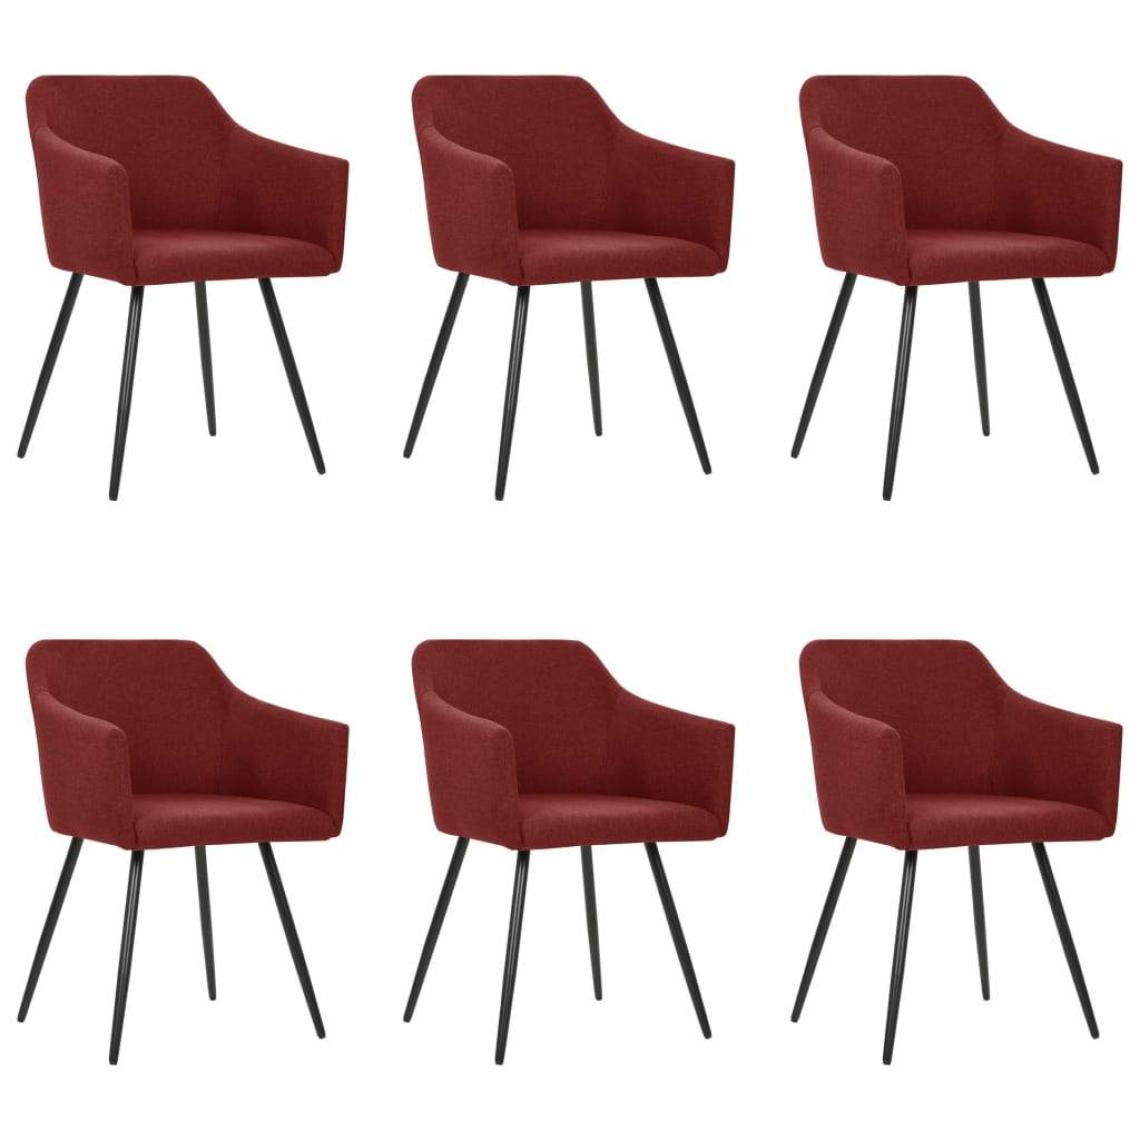 Decoshop26 - Lot de 6 chaises de salle à manger cuisine design moderne tissu rouge bordeaux CDS022819 - Chaises